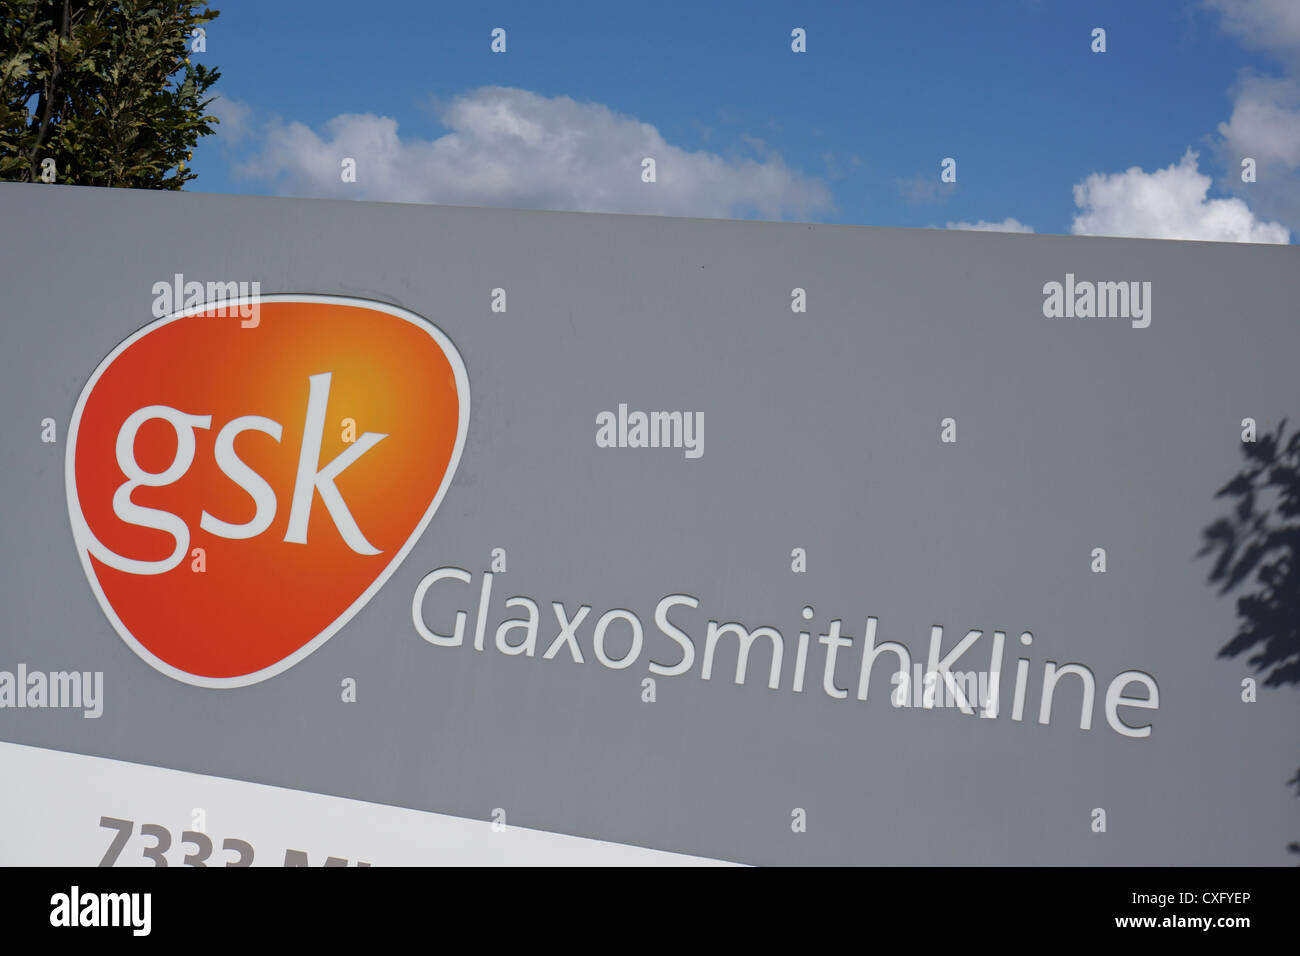 GSK GlaxoSmithKline sign Stock Photo